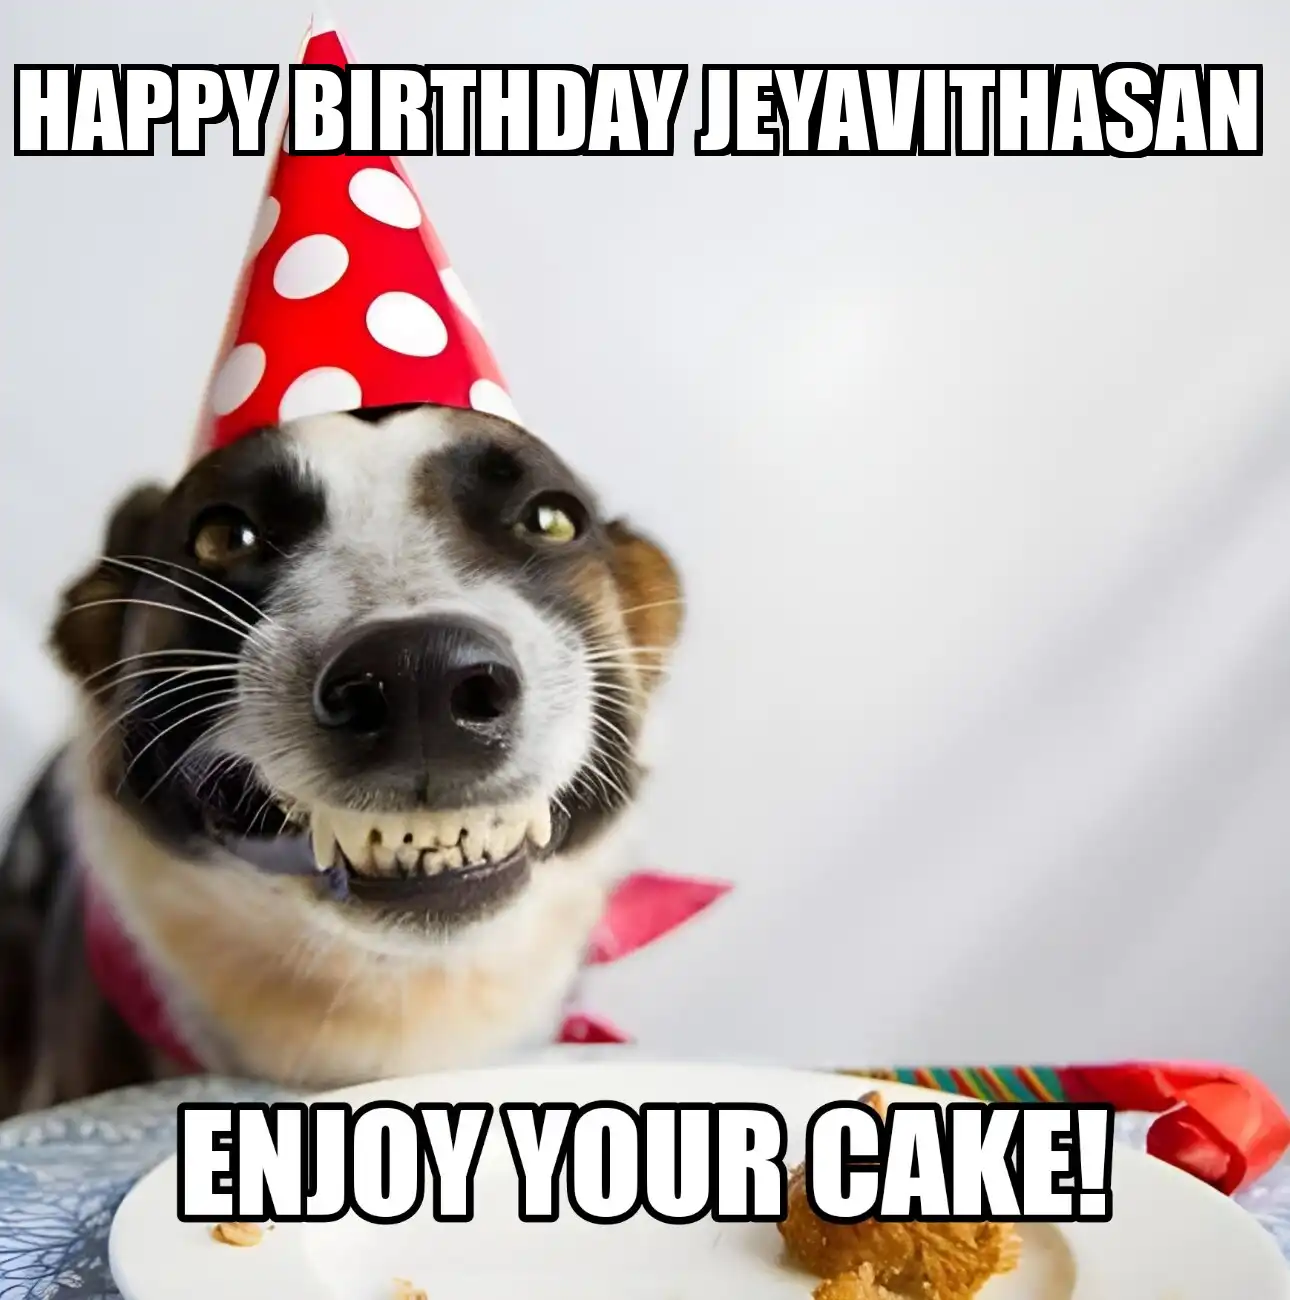 Happy Birthday Jeyavithasan Enjoy Your Cake Dog Meme